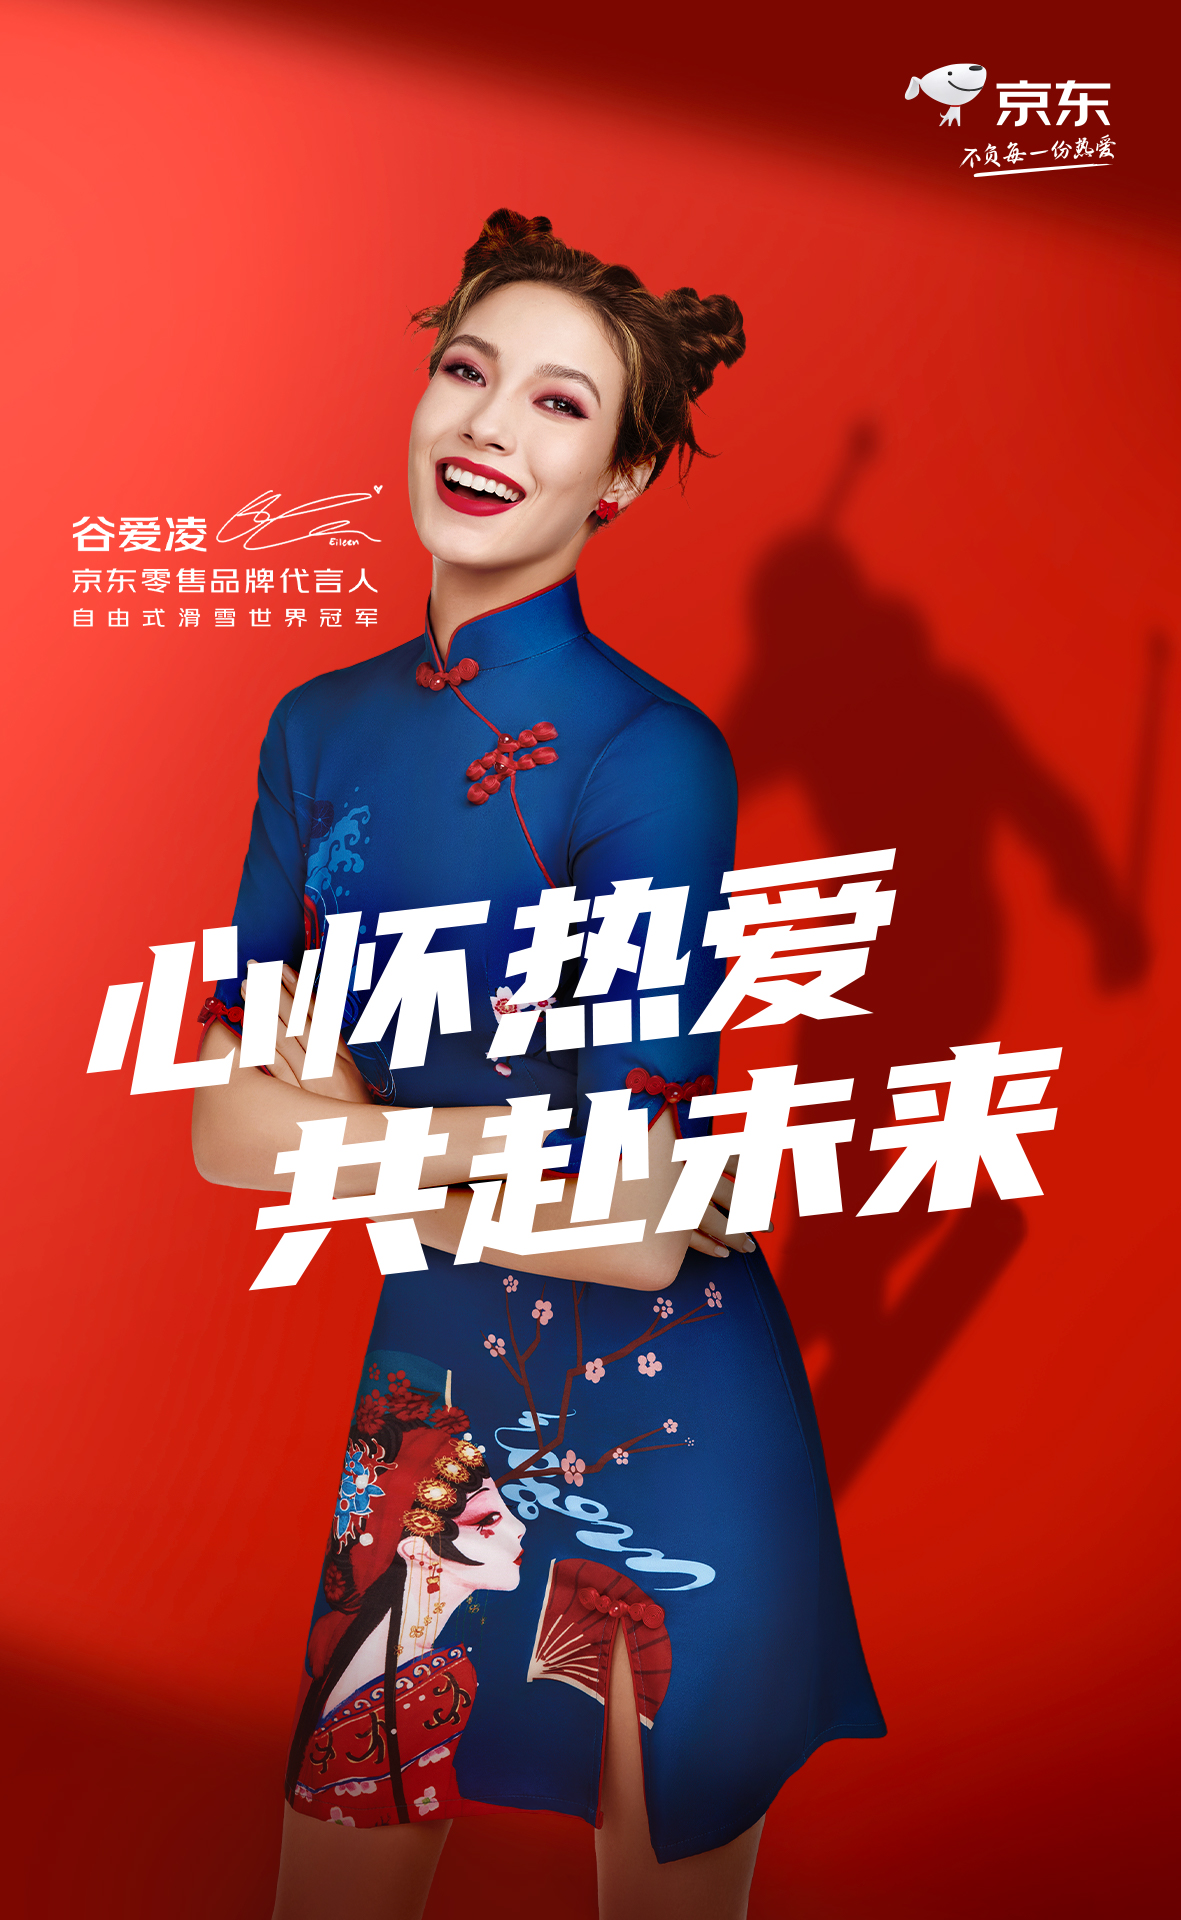 구아이링이 모델로 출연한 중국 온라인 쇼핑몰 징둥 광고. 징둥 홈페이지 캡처